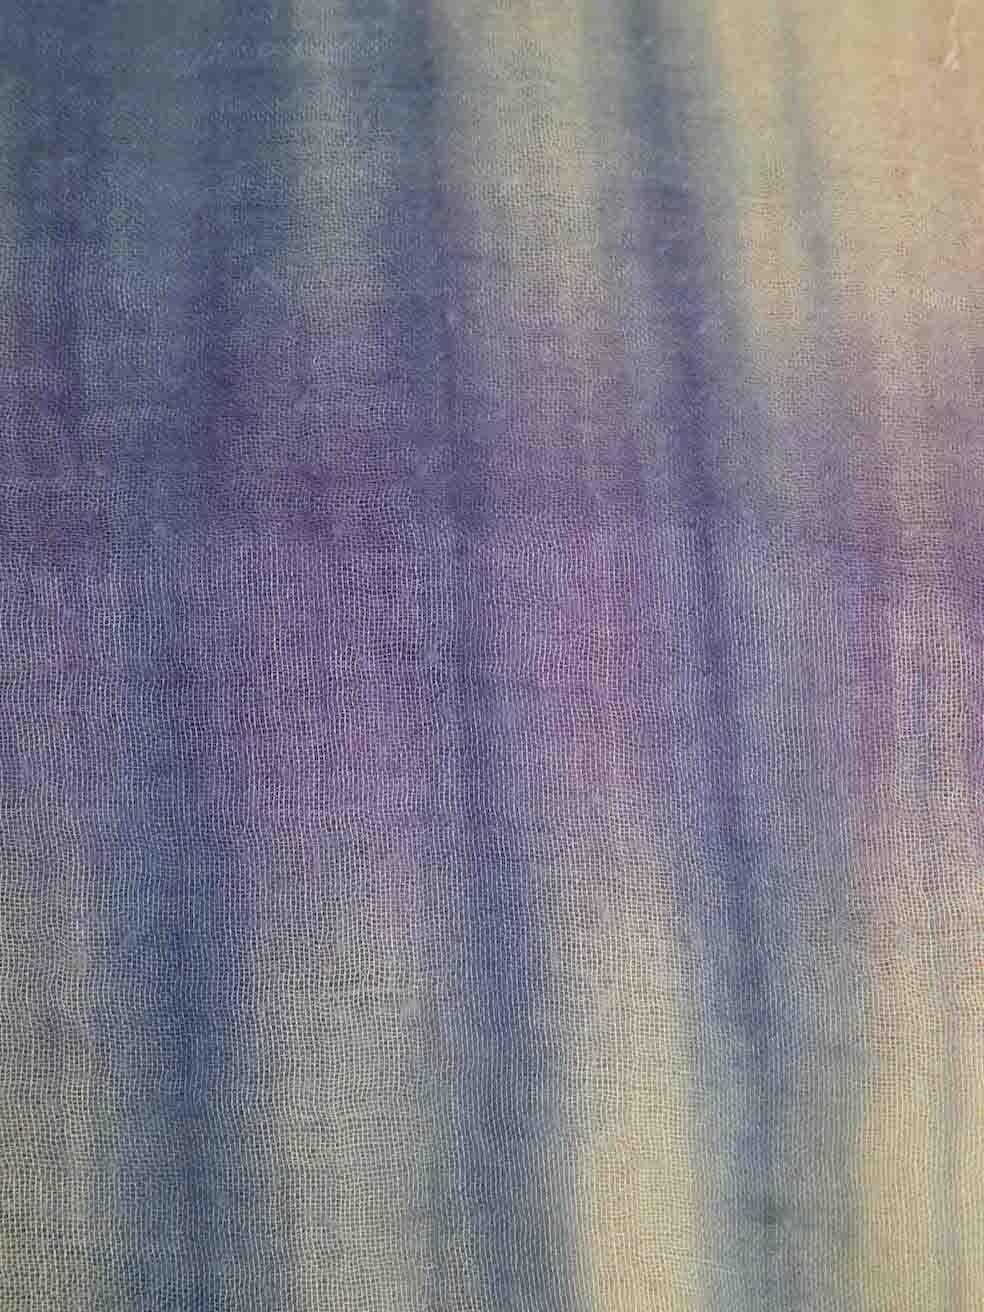 Bottega Veneta Tie Dye Print Square Scarf In Good Condition For Sale In London, GB